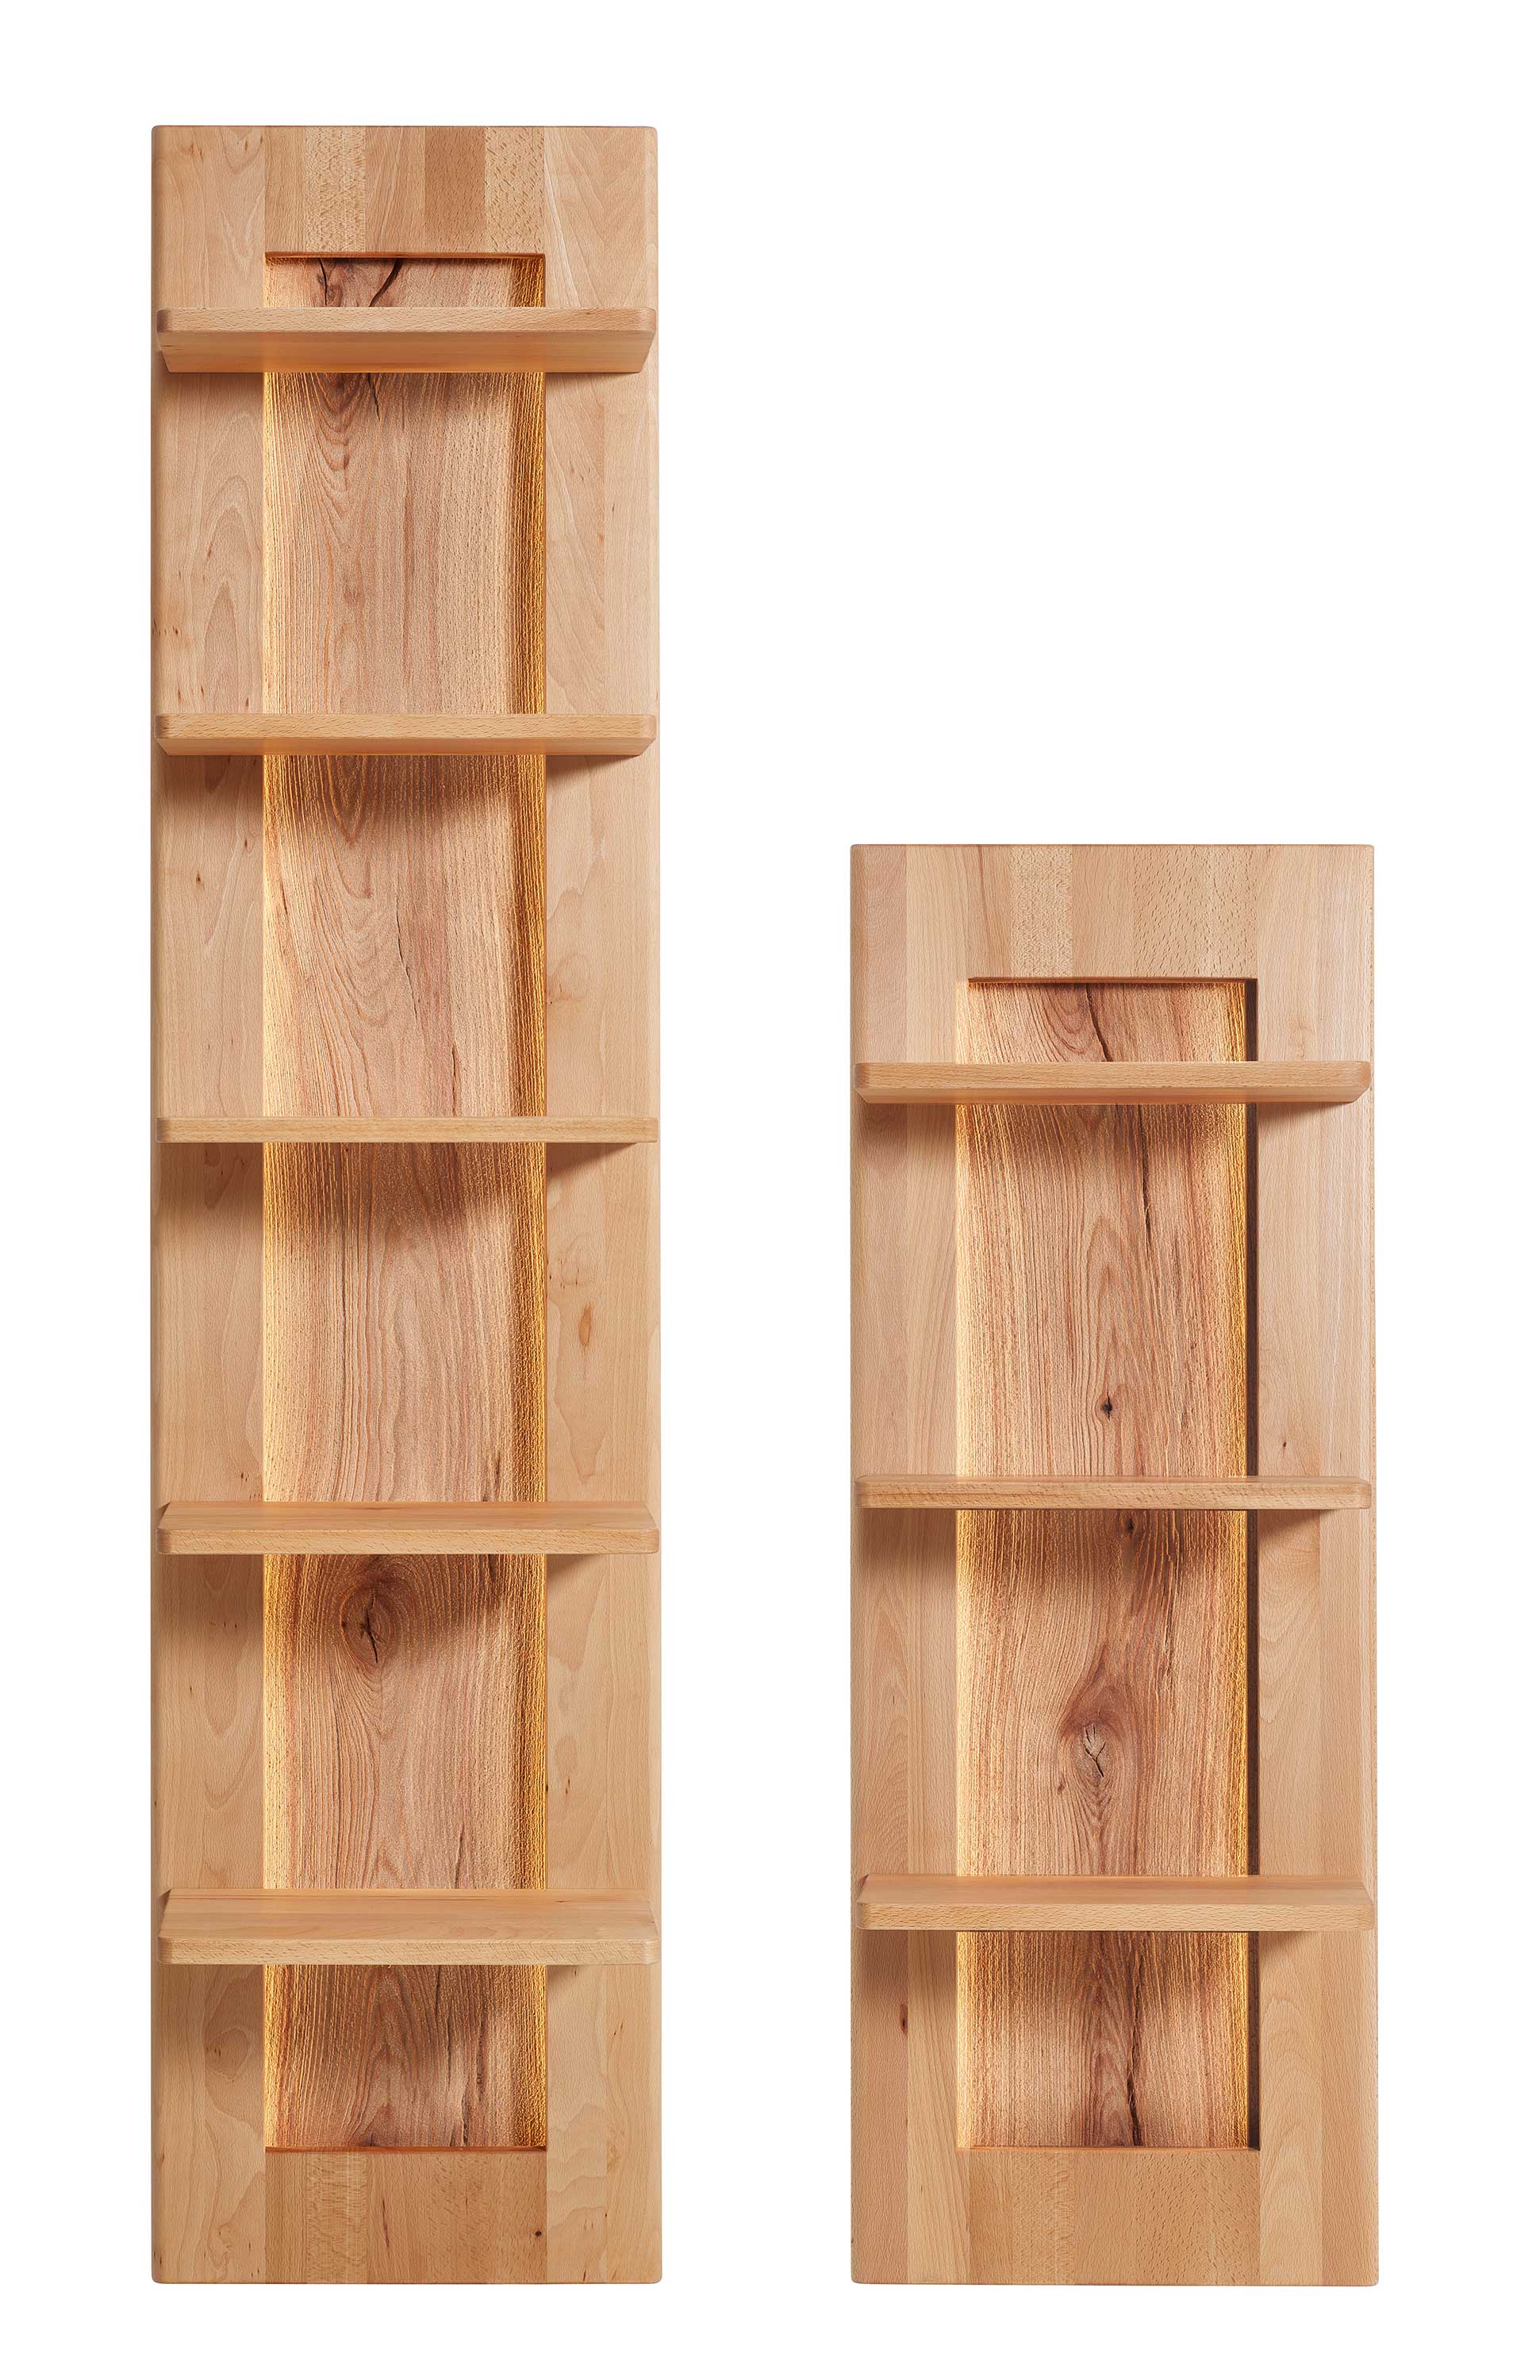 Möbel und Holz Massivholz Hängeregal 402 kernbuche sandgestrahlt